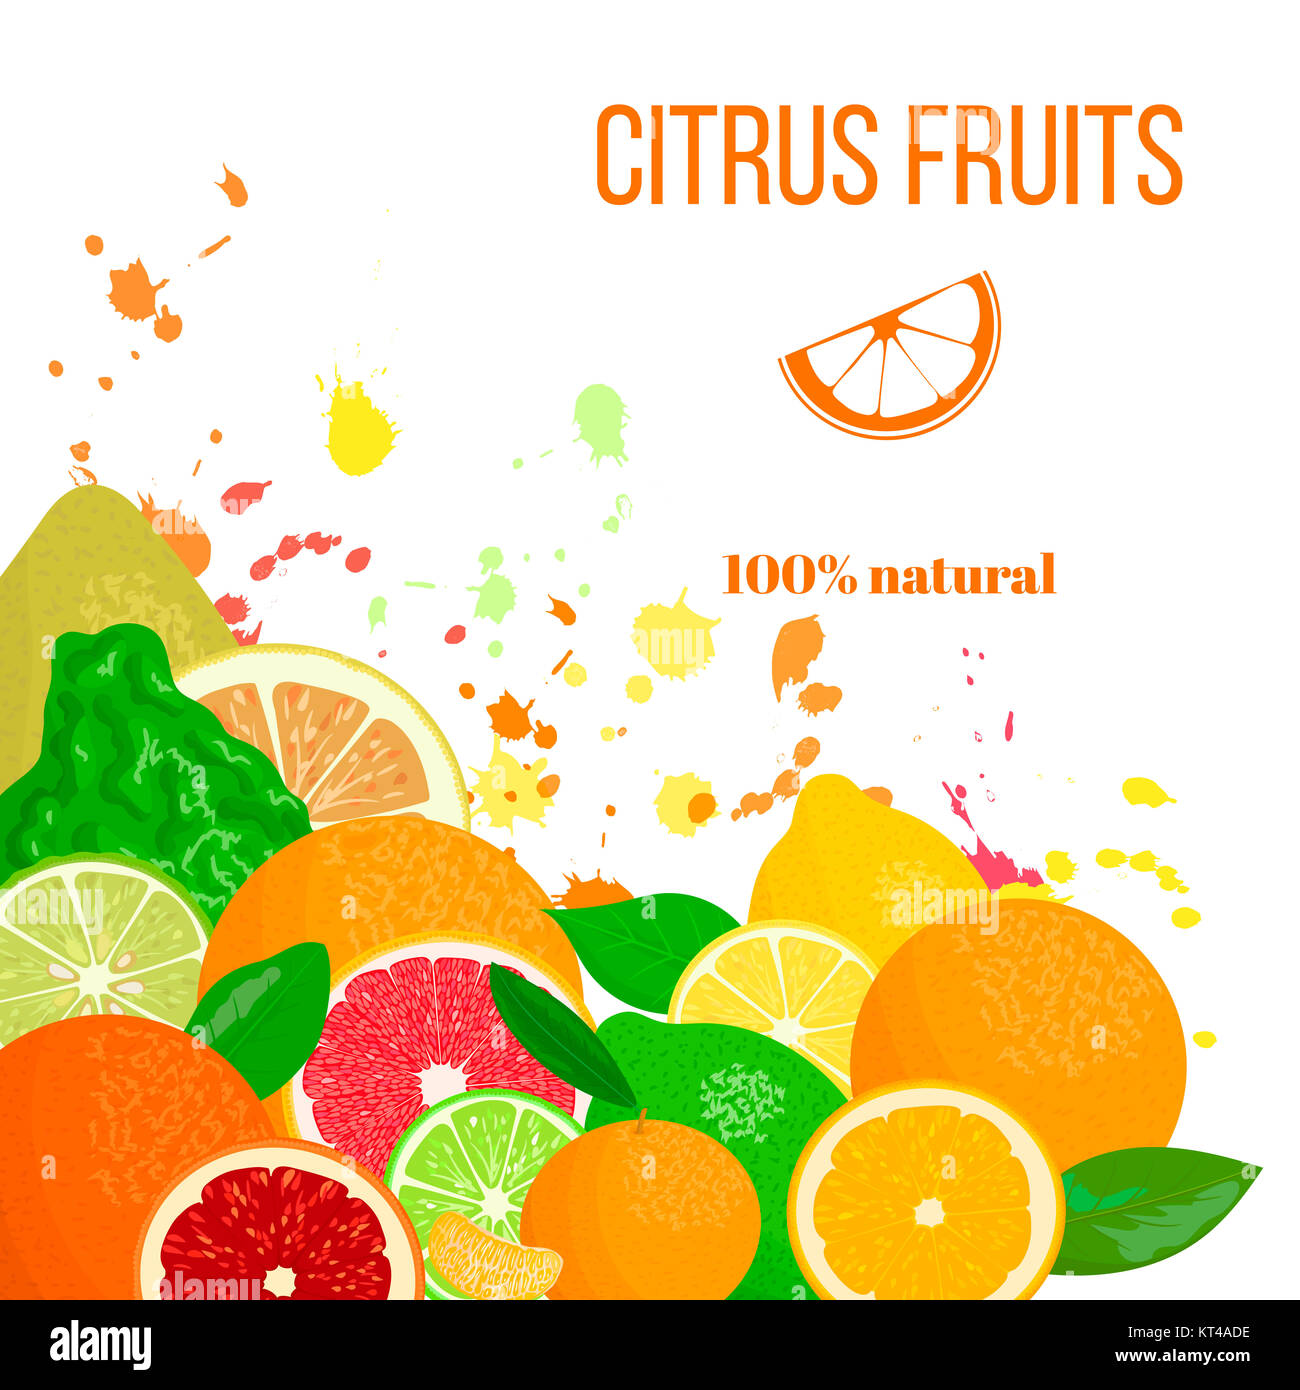 Citrus fruits fresh and juicy. Bergamot, lemon, grapefruit, lime, mandarin, pomelo, orange, blood orange with splashes Stock Photo